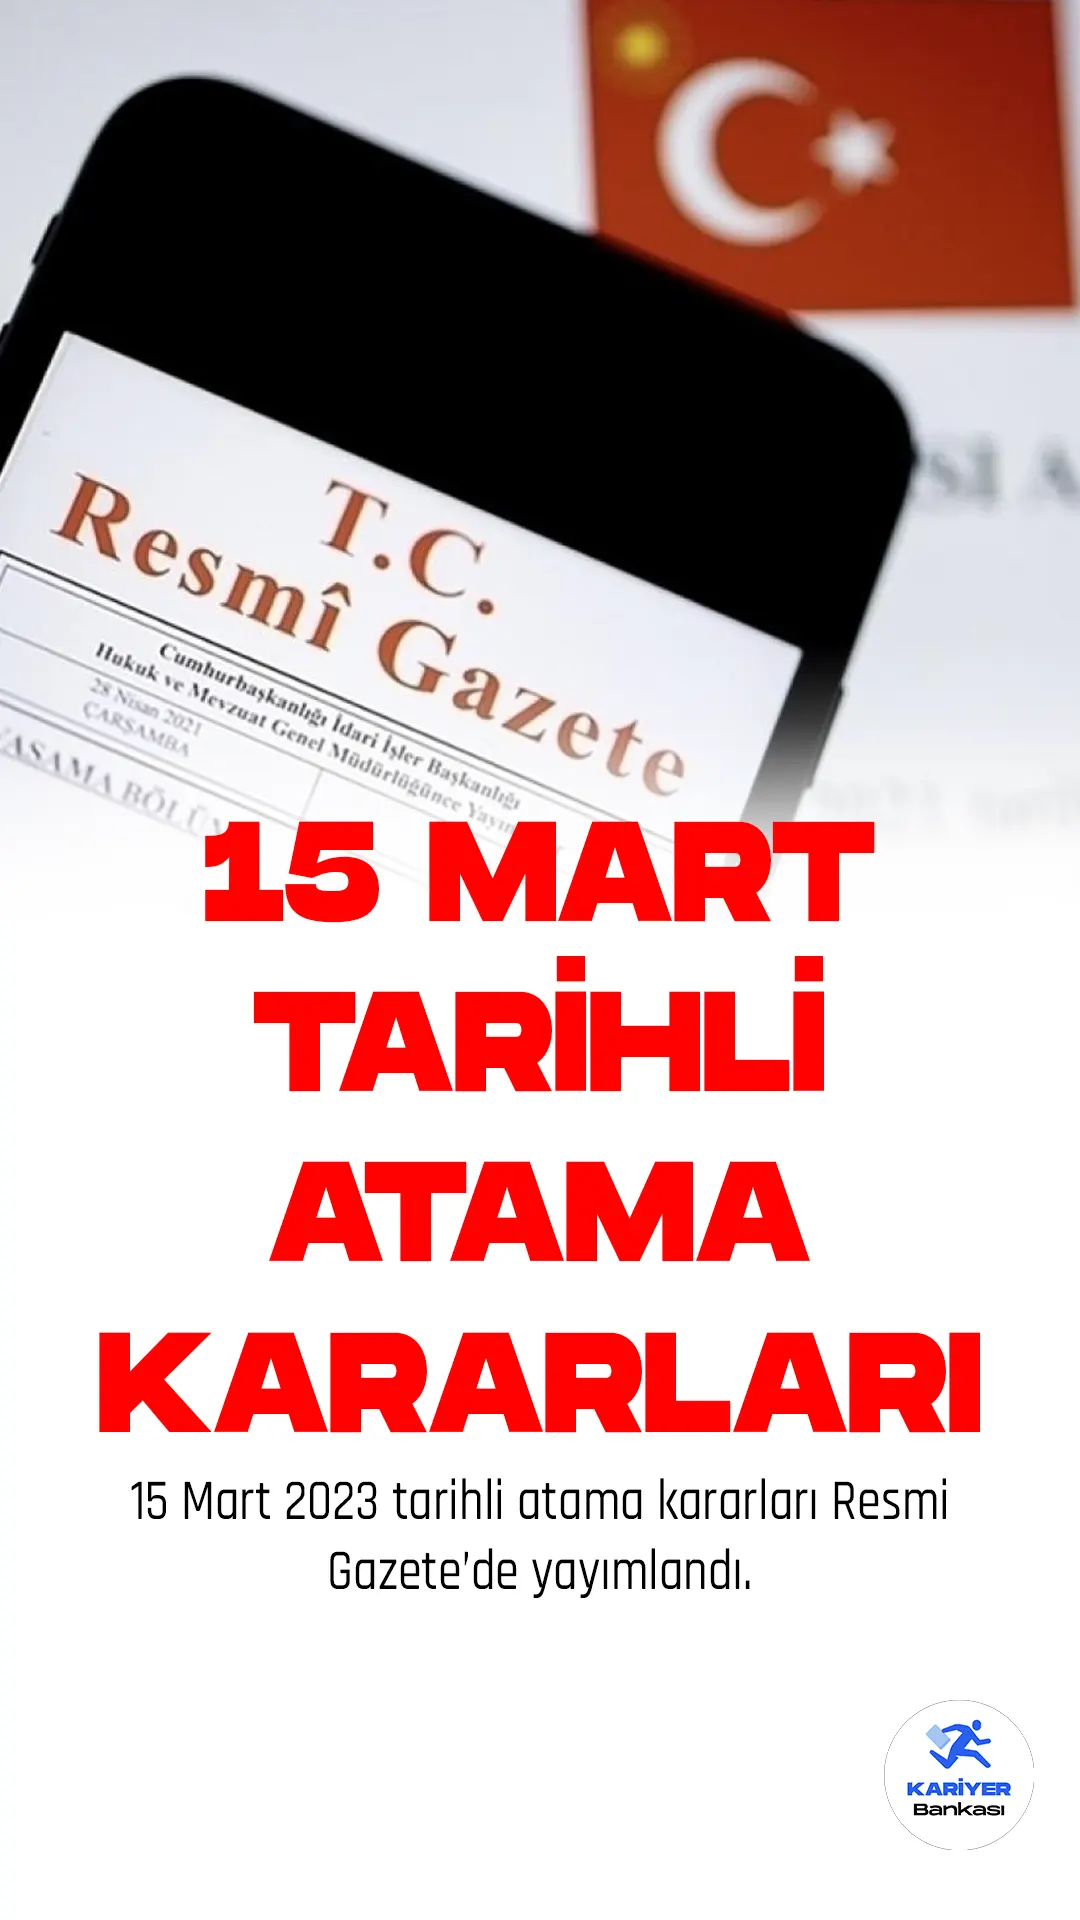 15 Mart Tarihli Atama Kararları Resmi Gazete'de Yayımlandı